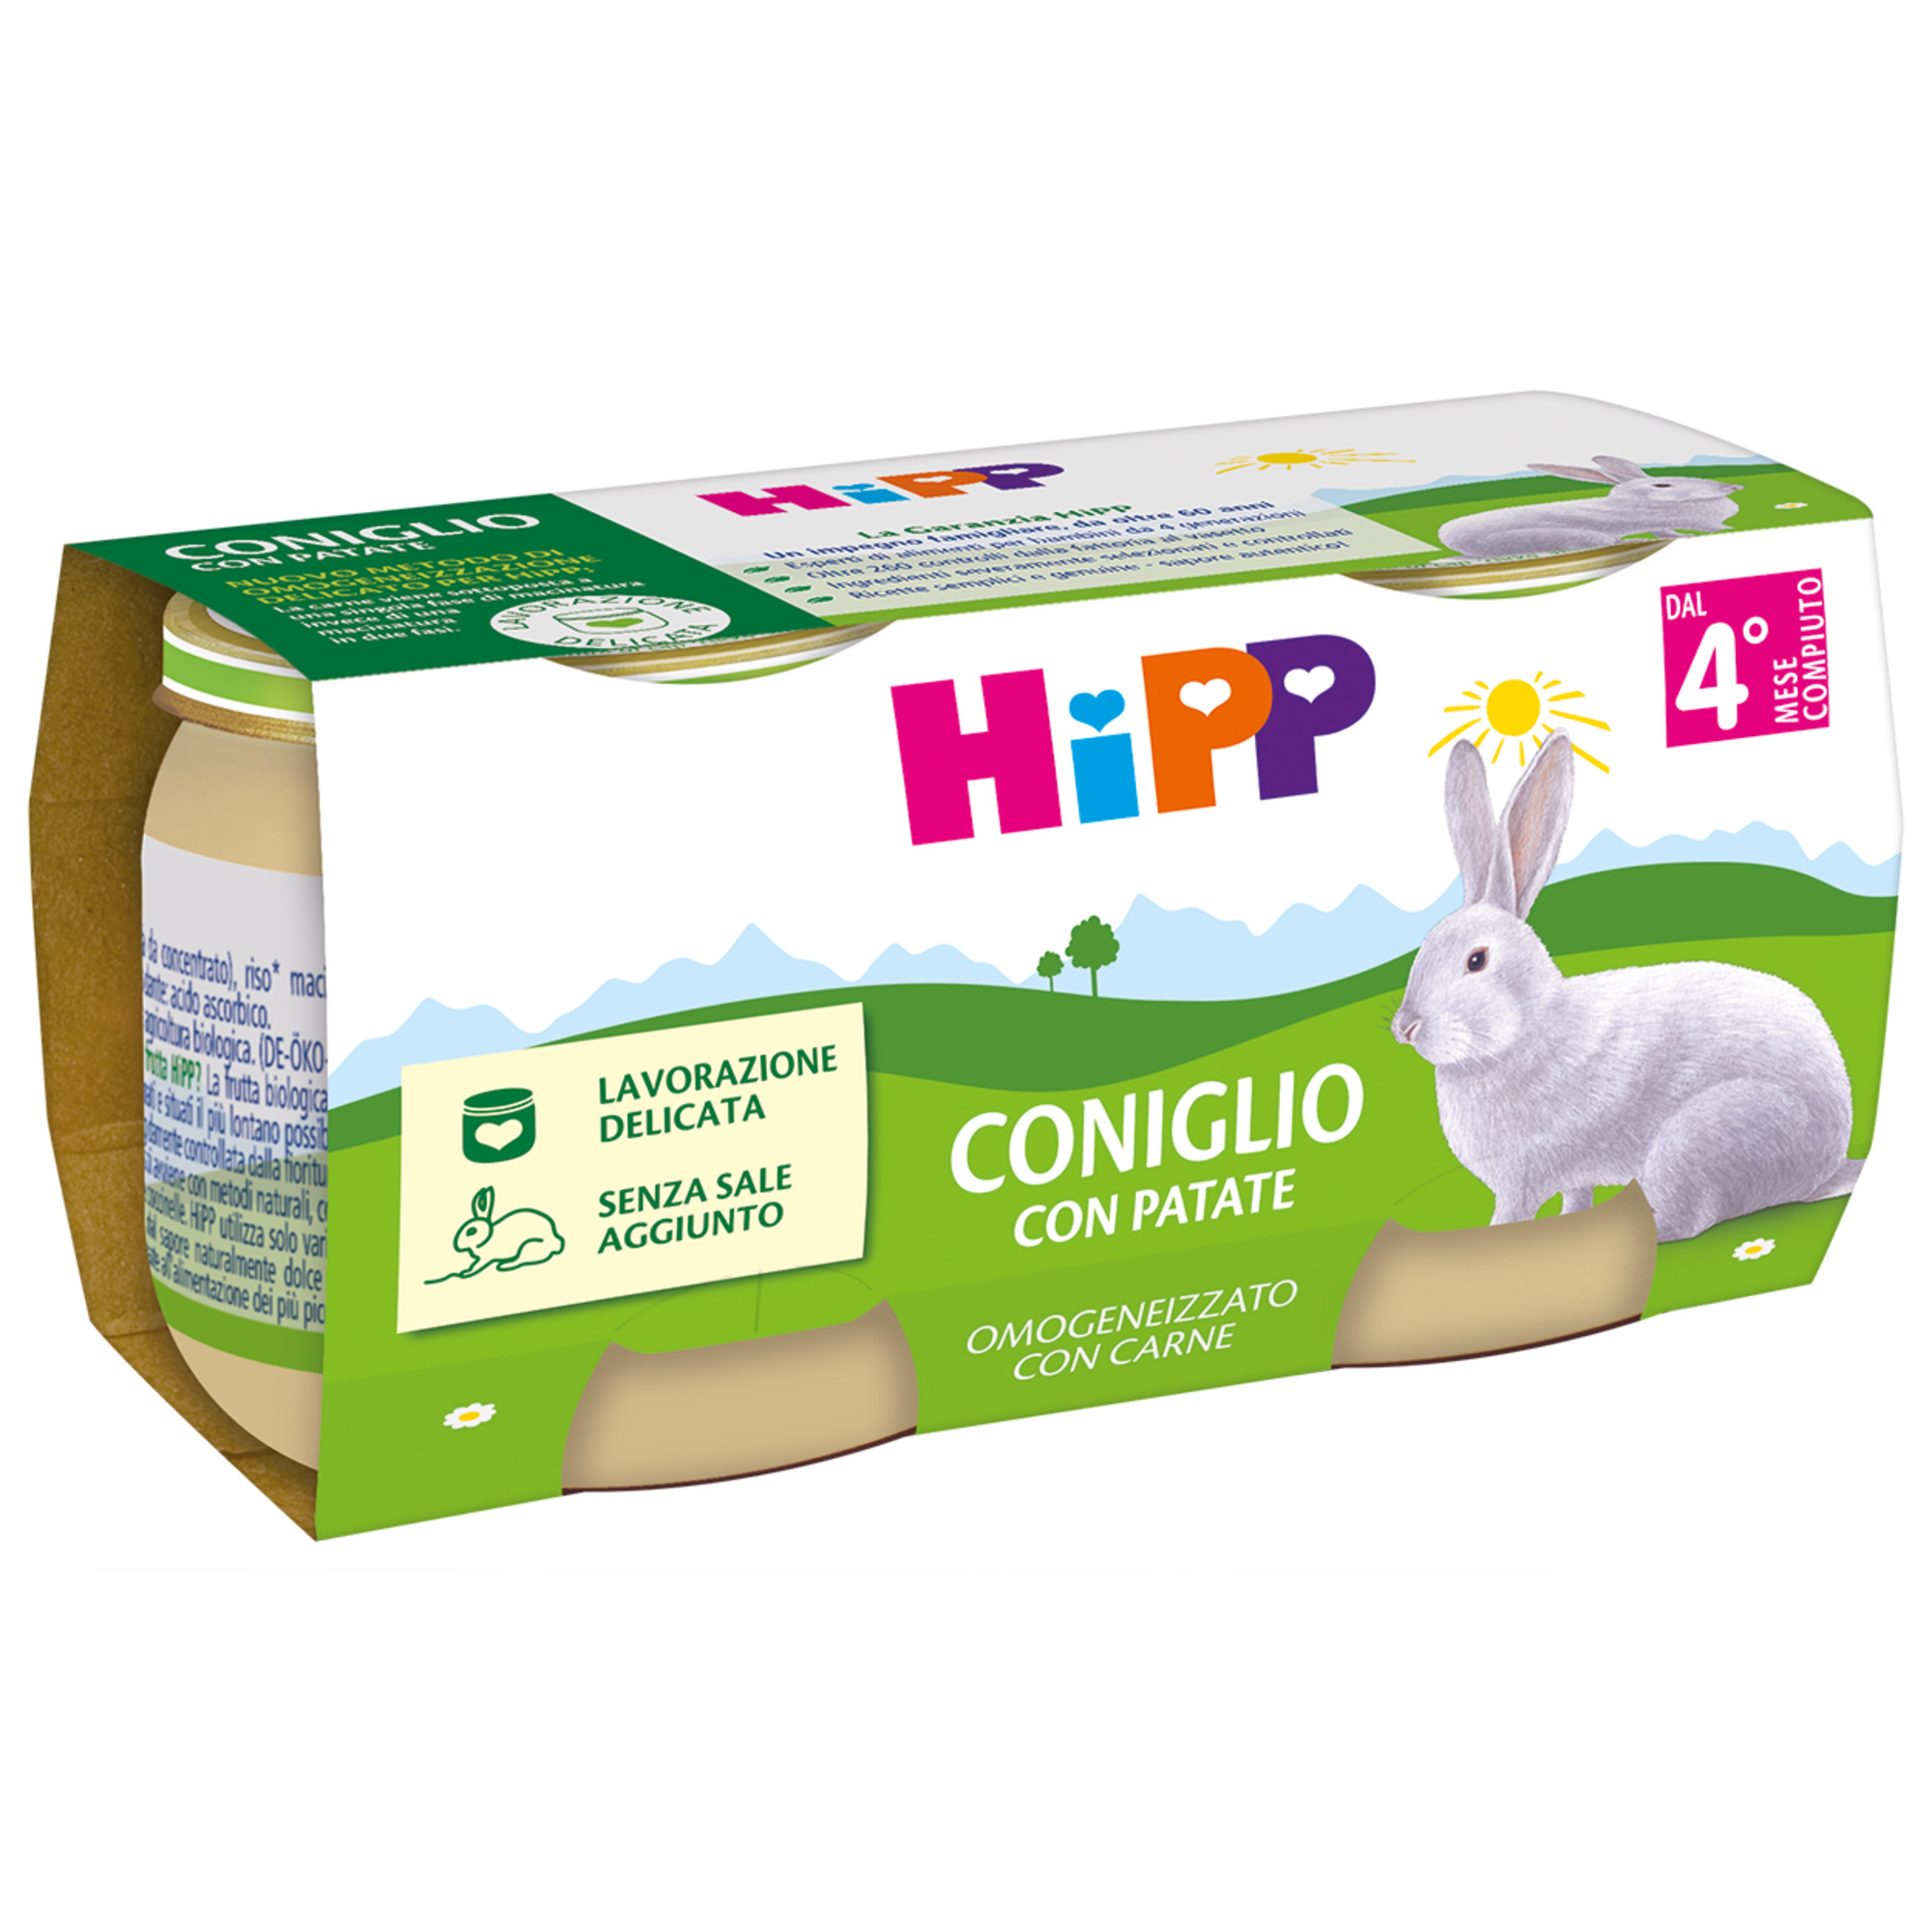 Hipp omogeneizzato coniglio con patate 2x80g - Hipp Baby